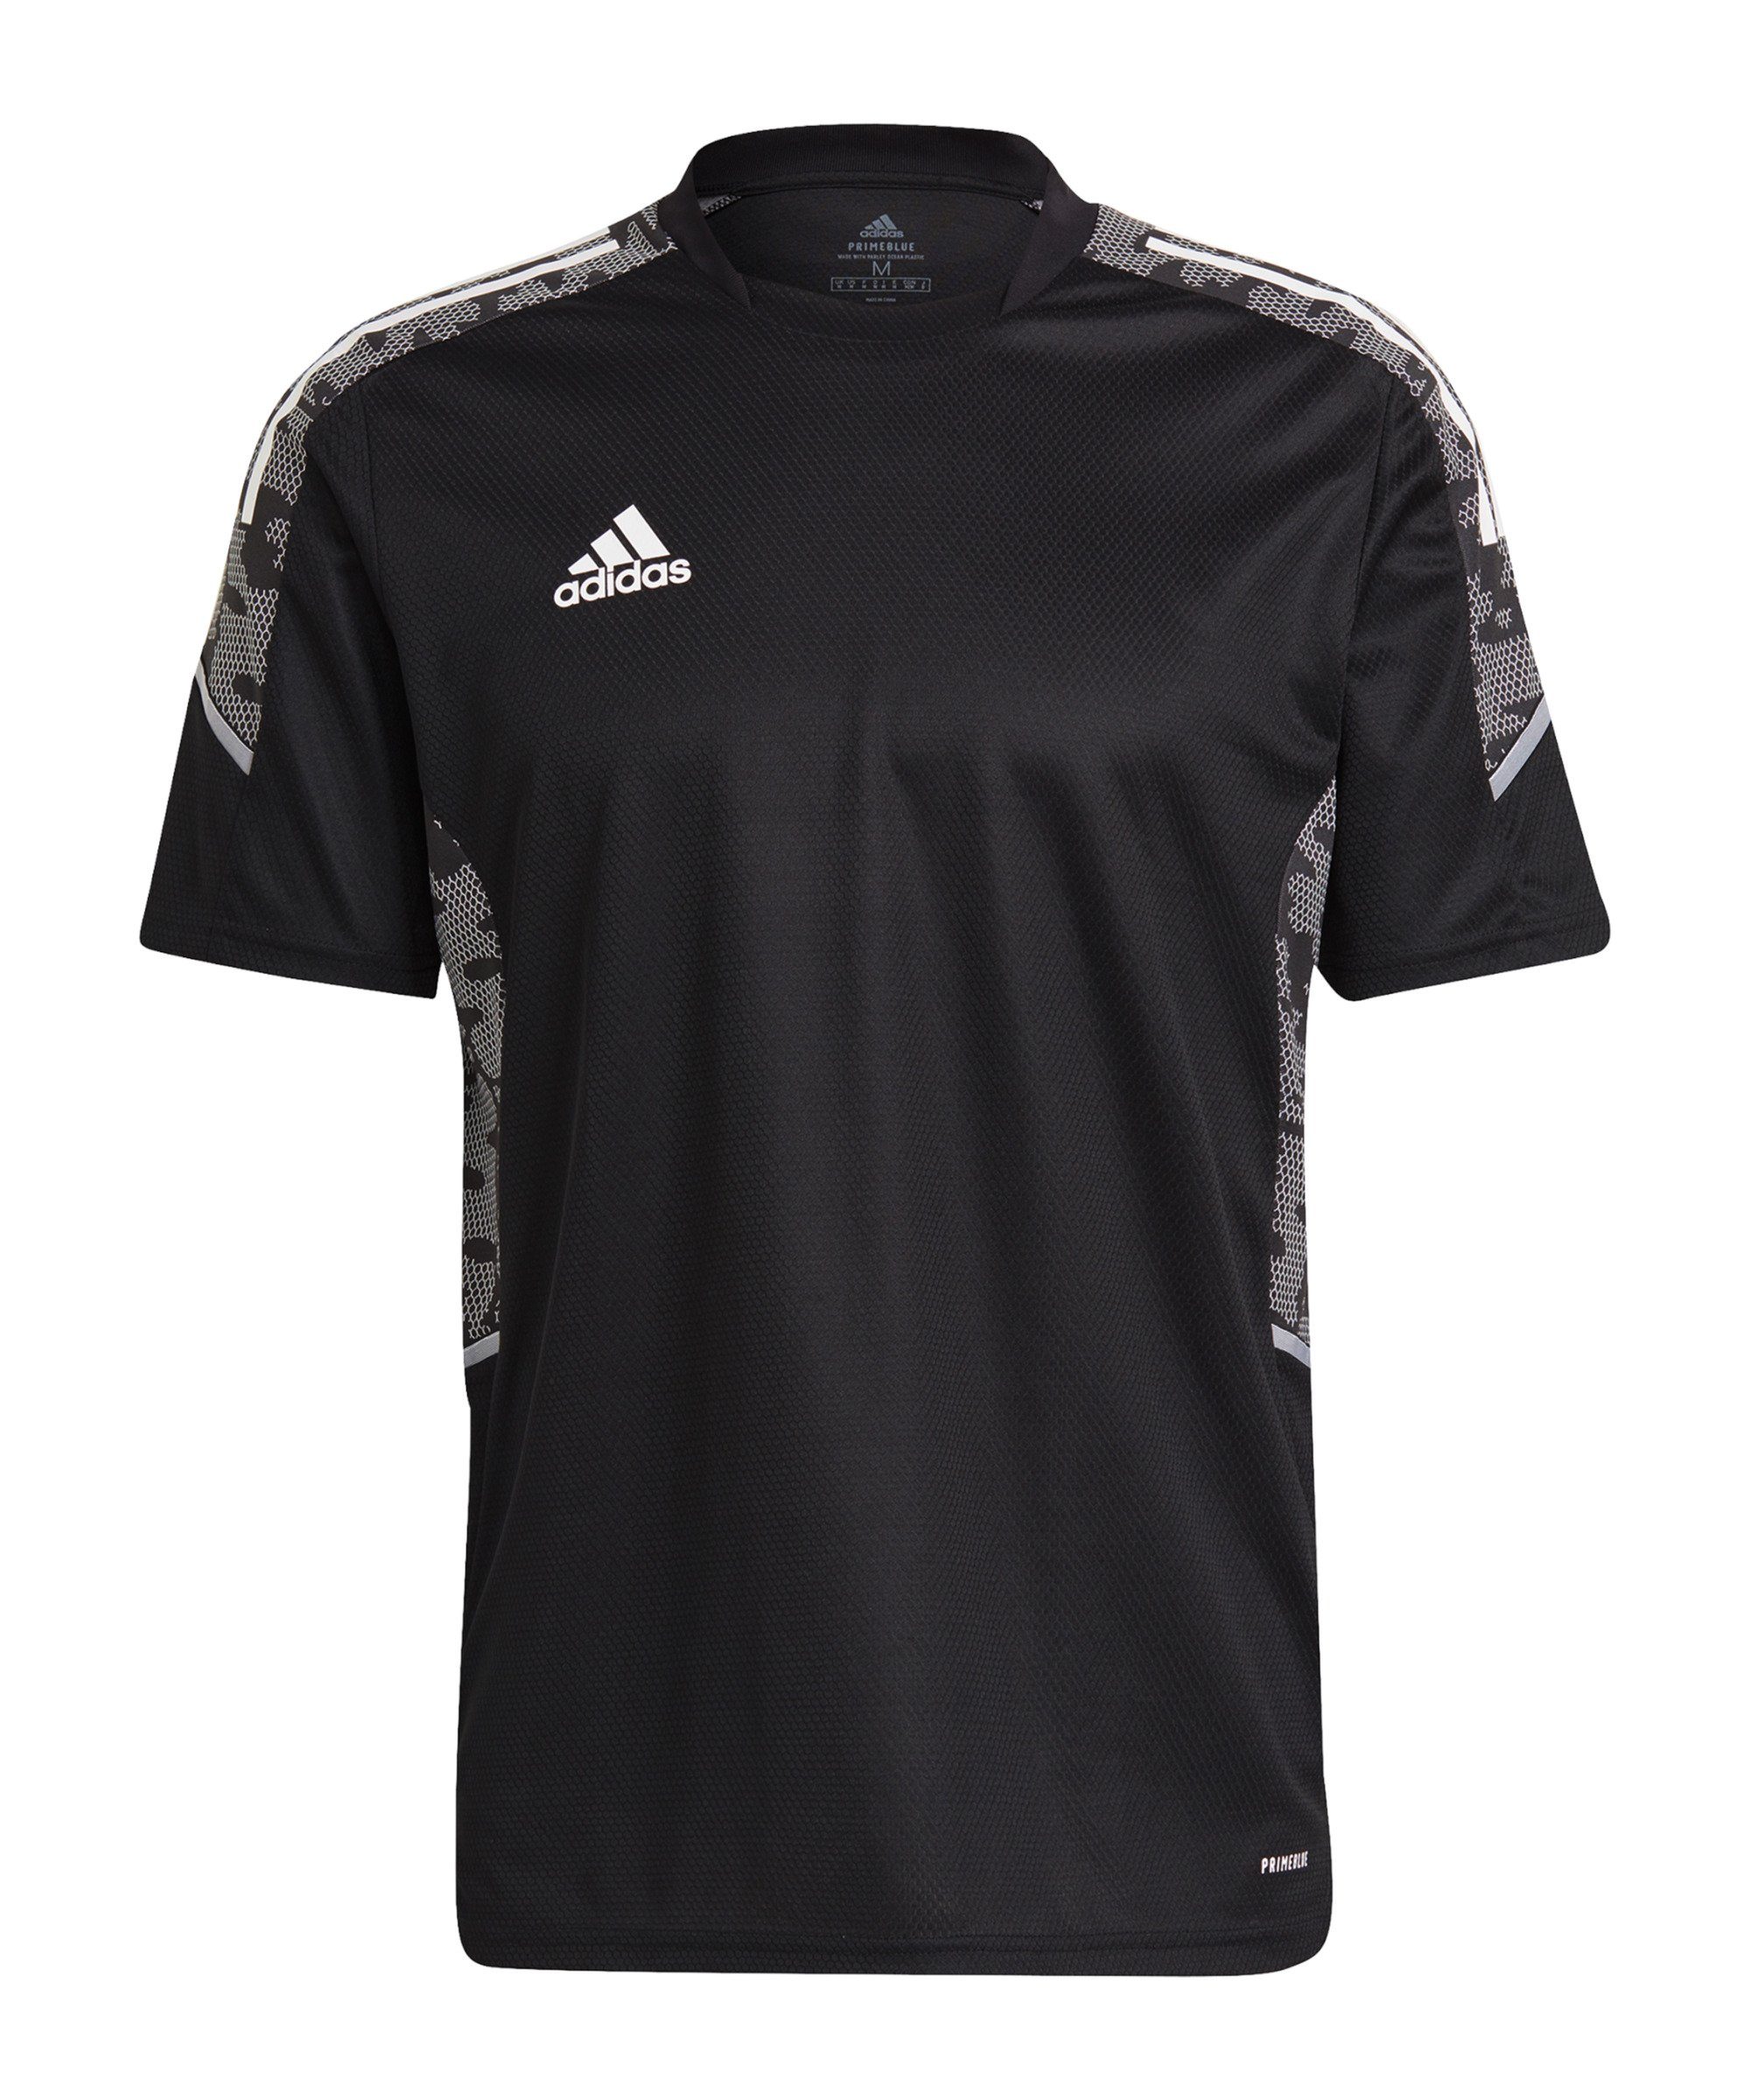 T-Shirt default Performance adidas Condivo 21 Trainingsshirt schwarzweiss